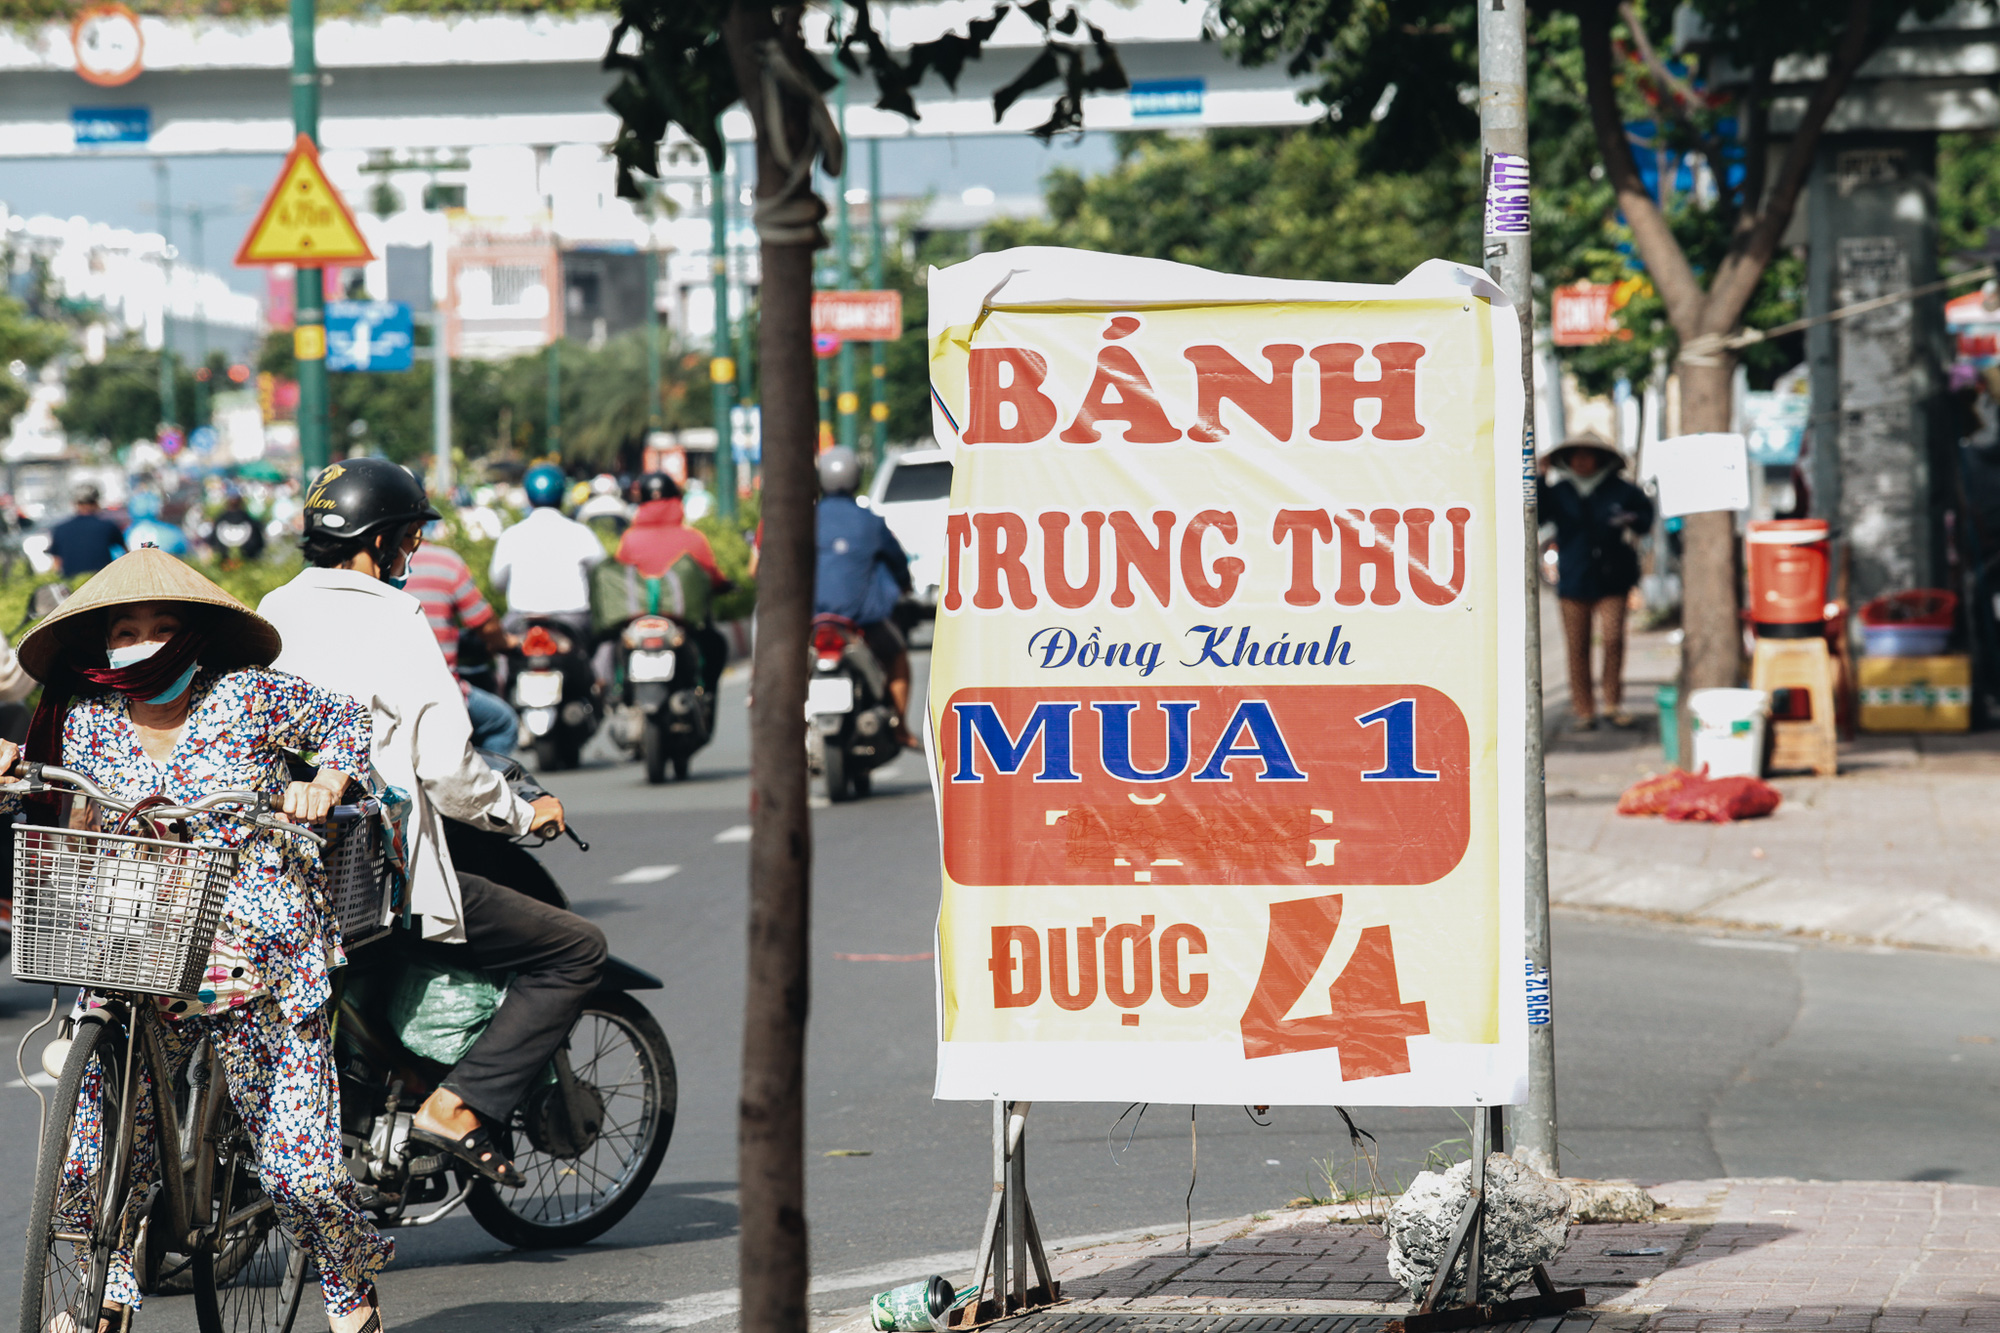 Bánh Trung thu lề đường ở Sài Gòn: Mua 1 tặng 3 nhưng giá bằng 4 cái - Ảnh 1.